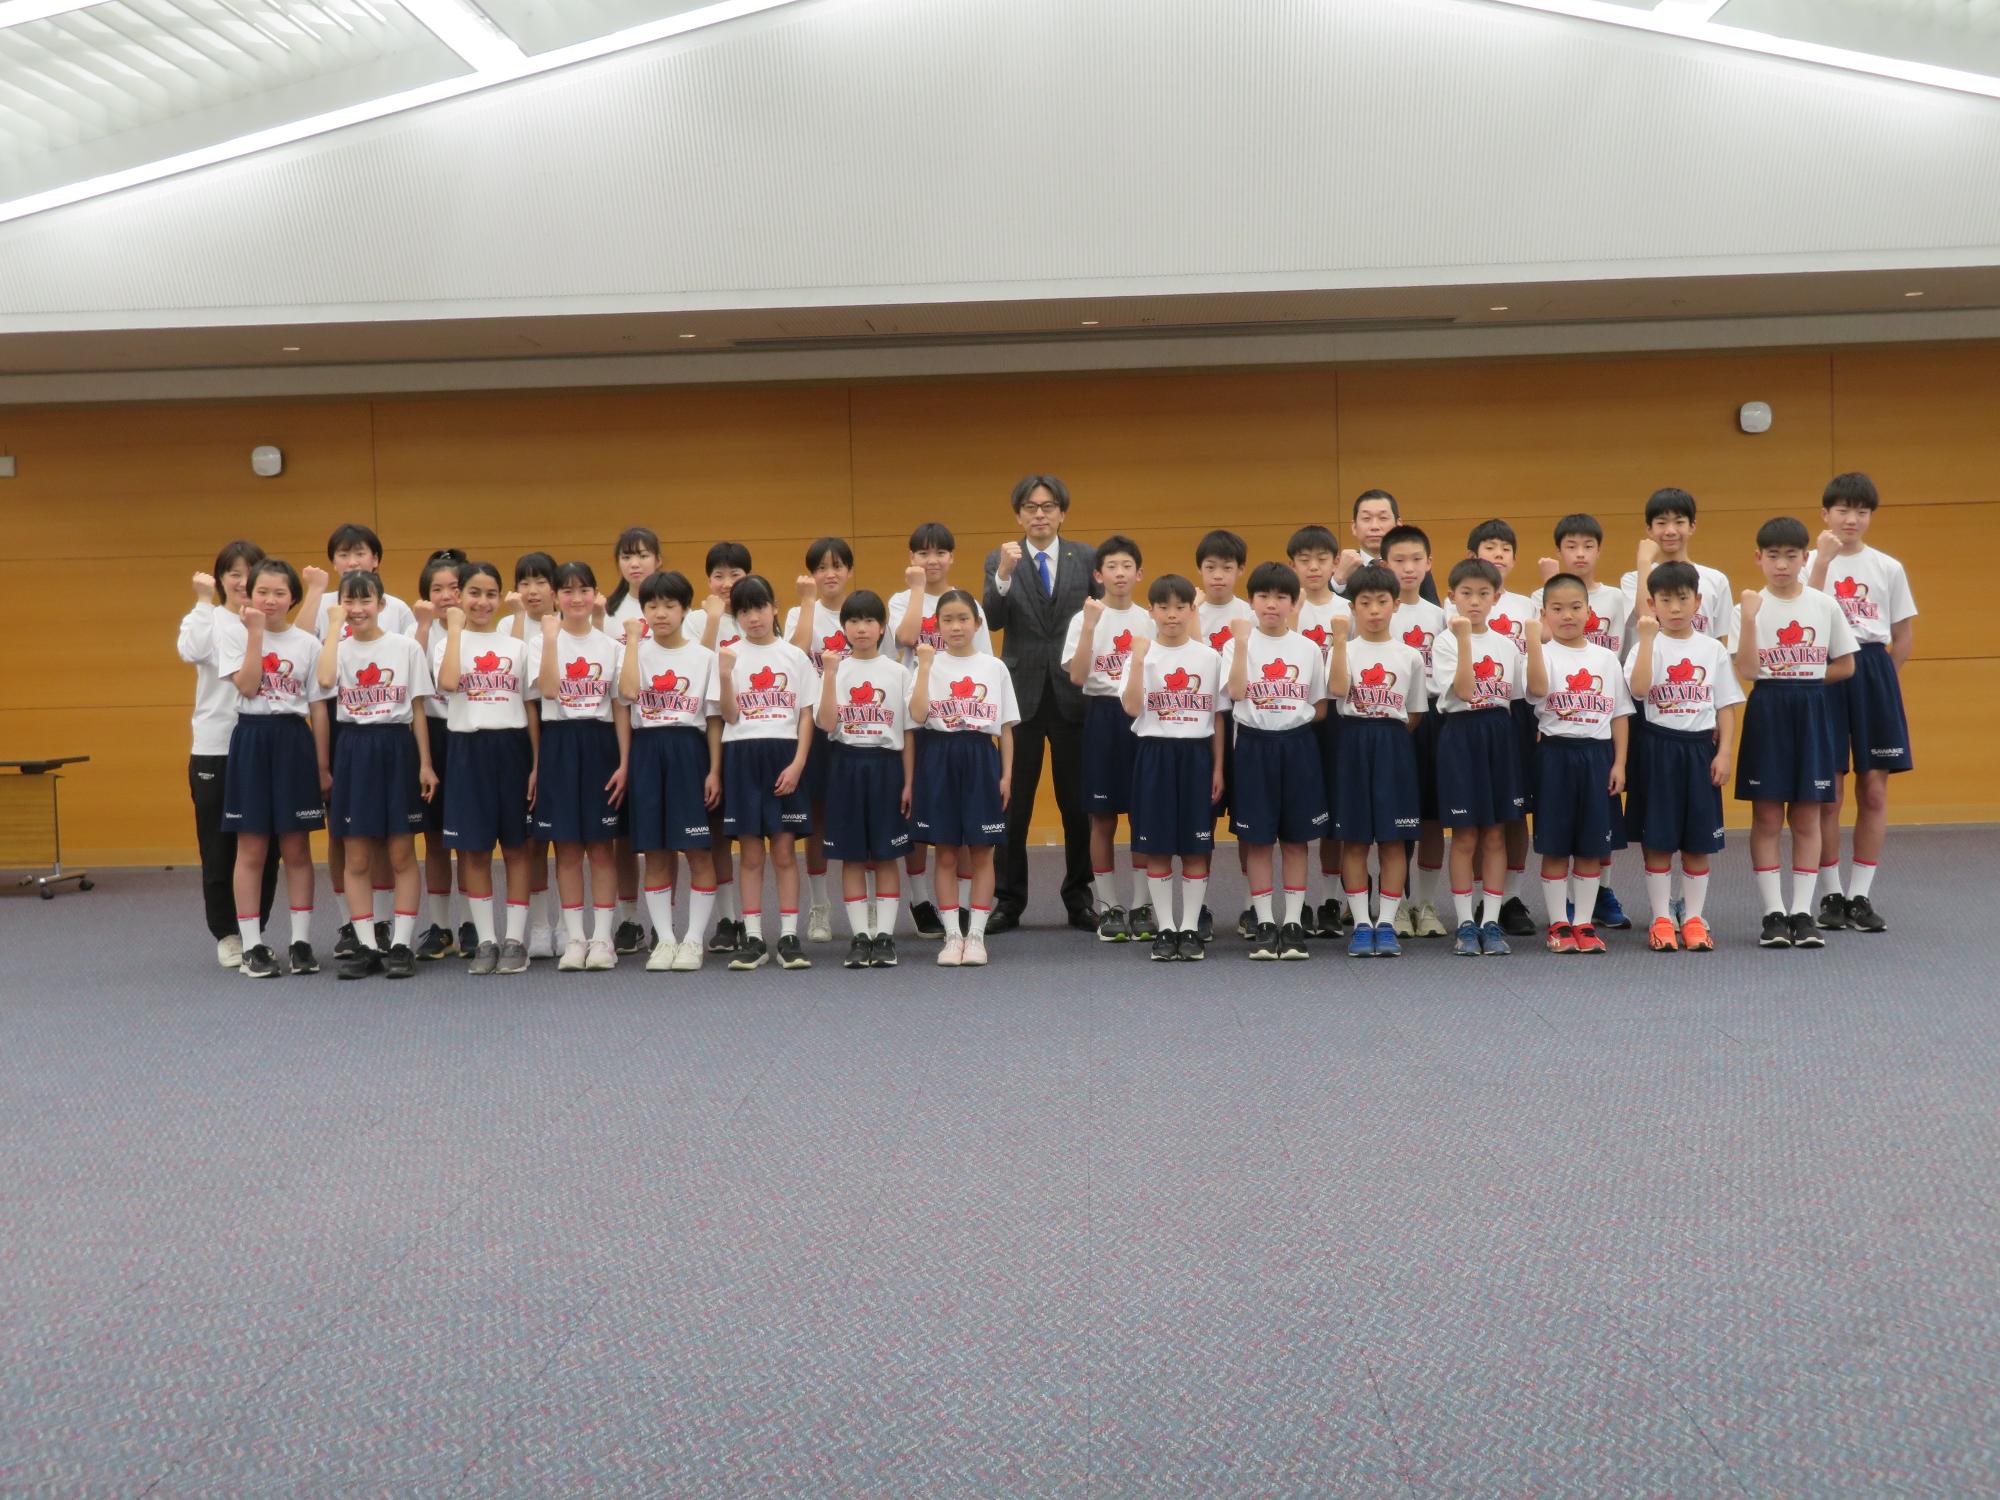 沢池ミニバスケットボールクラブチームの皆さんと市長の集合写真